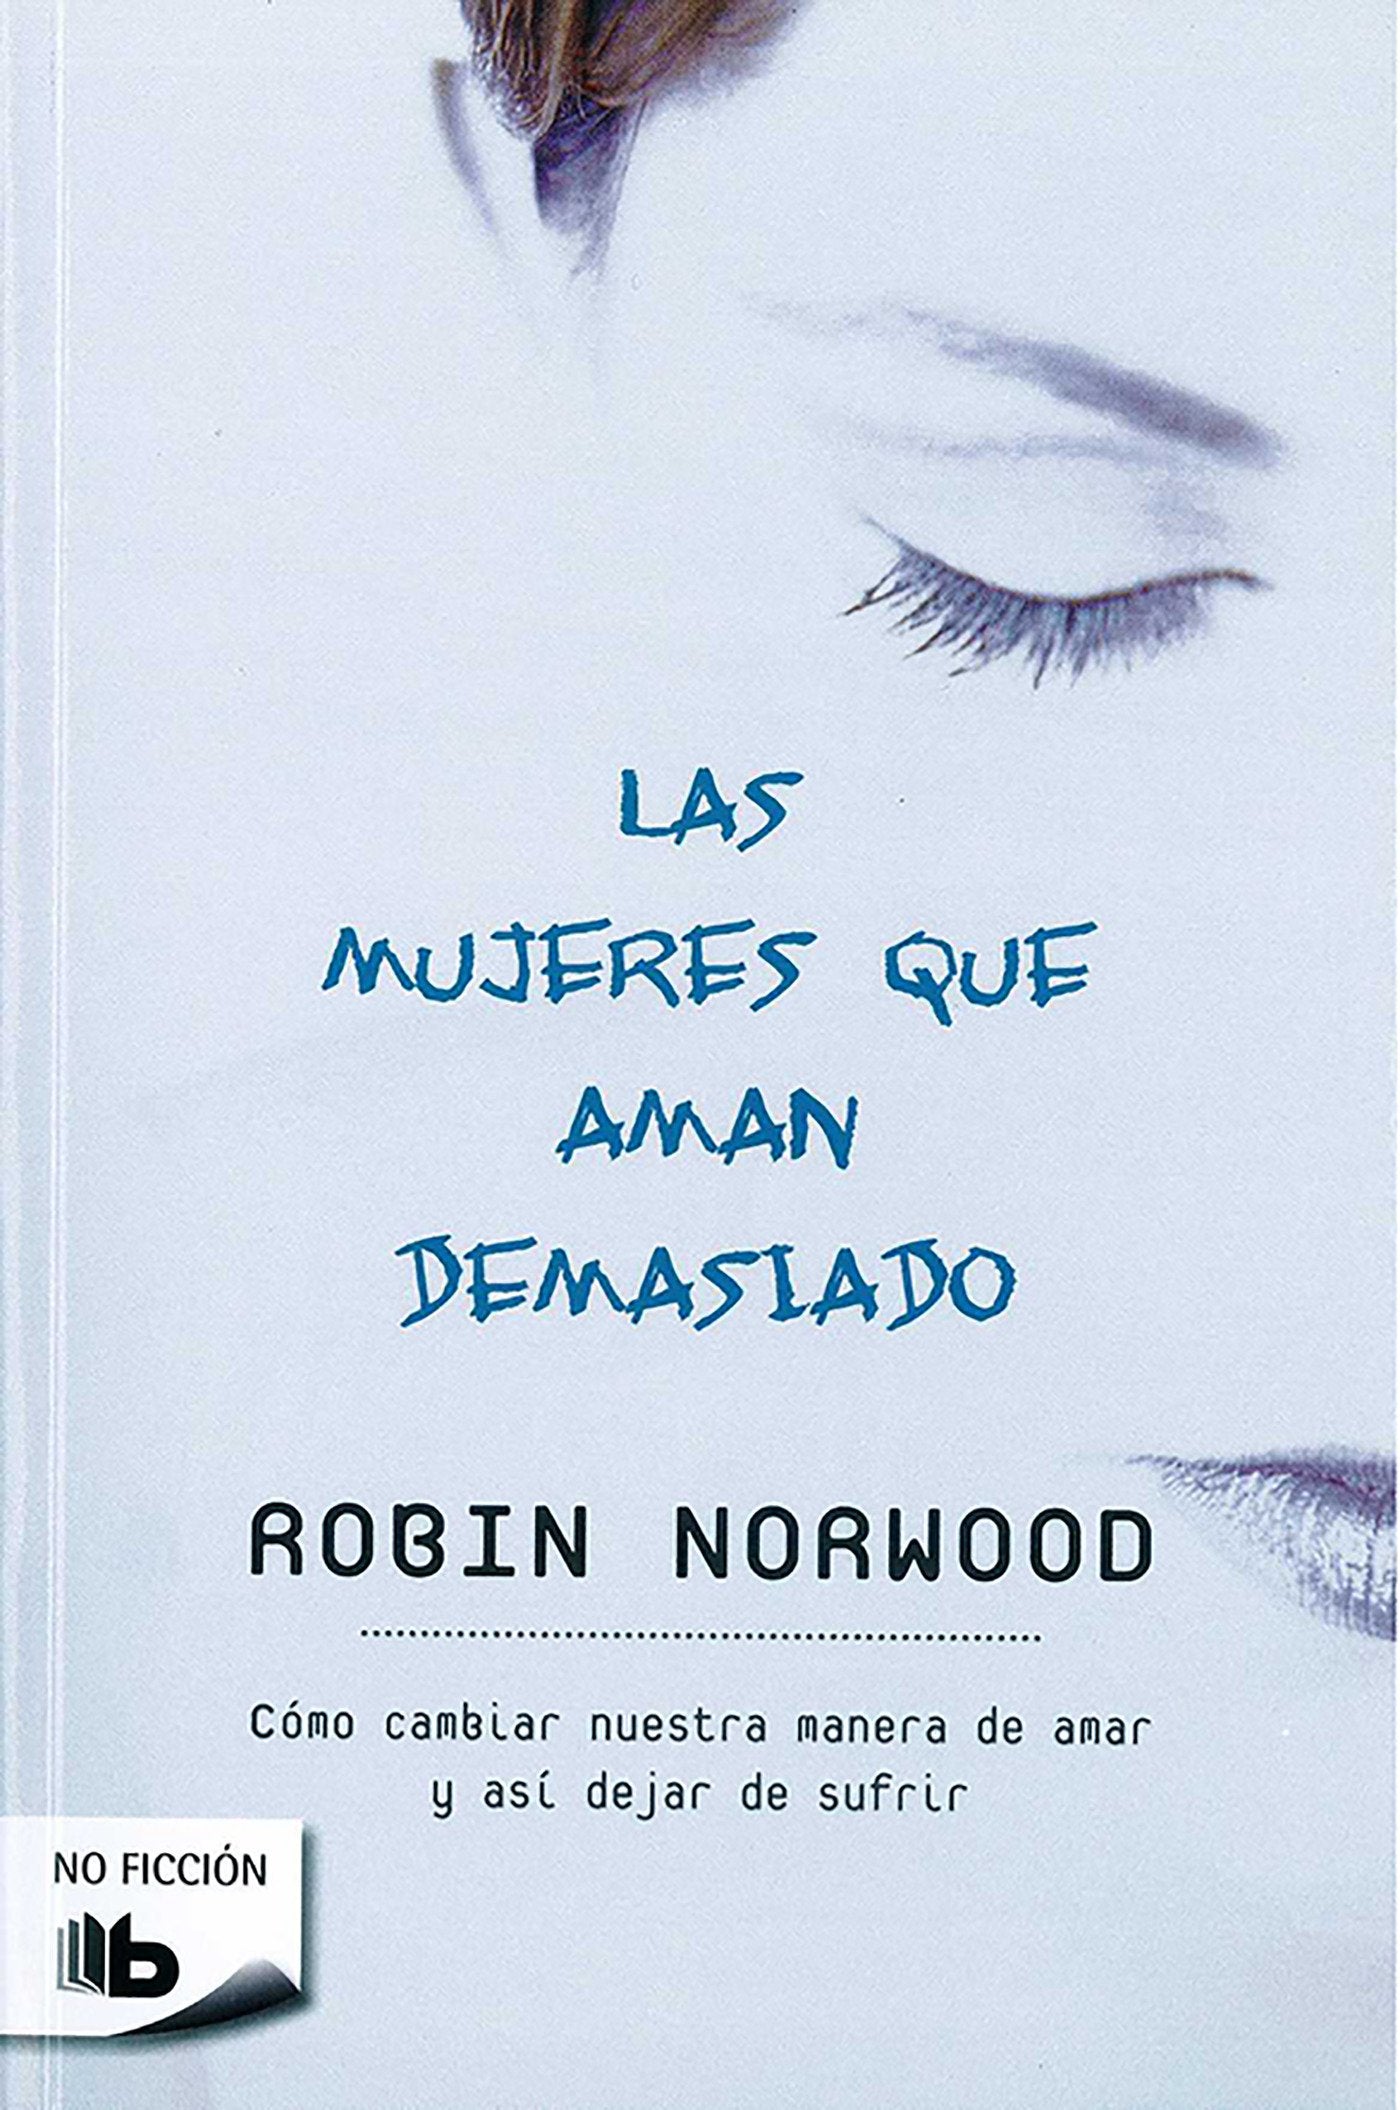 Las mujeres que aman demasiado - Robin Norwood / resumen. 